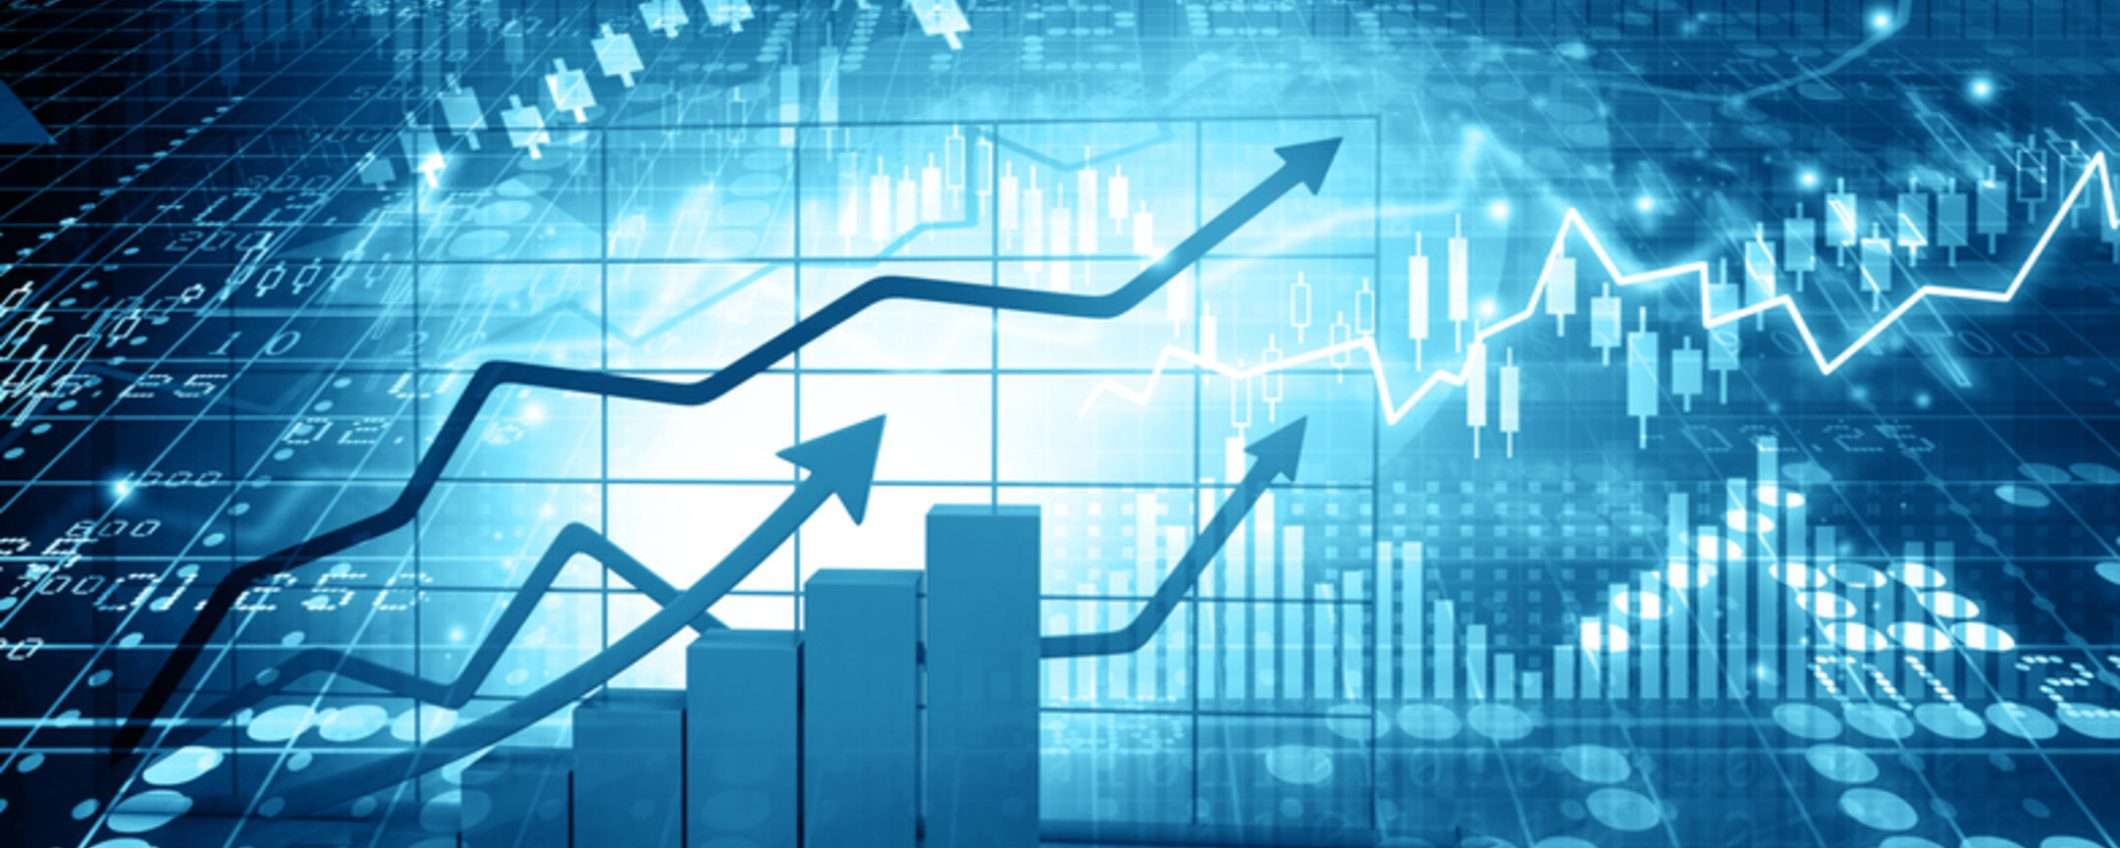 BUX Zero, investi sui mercati azionari in modo semplice e rapido